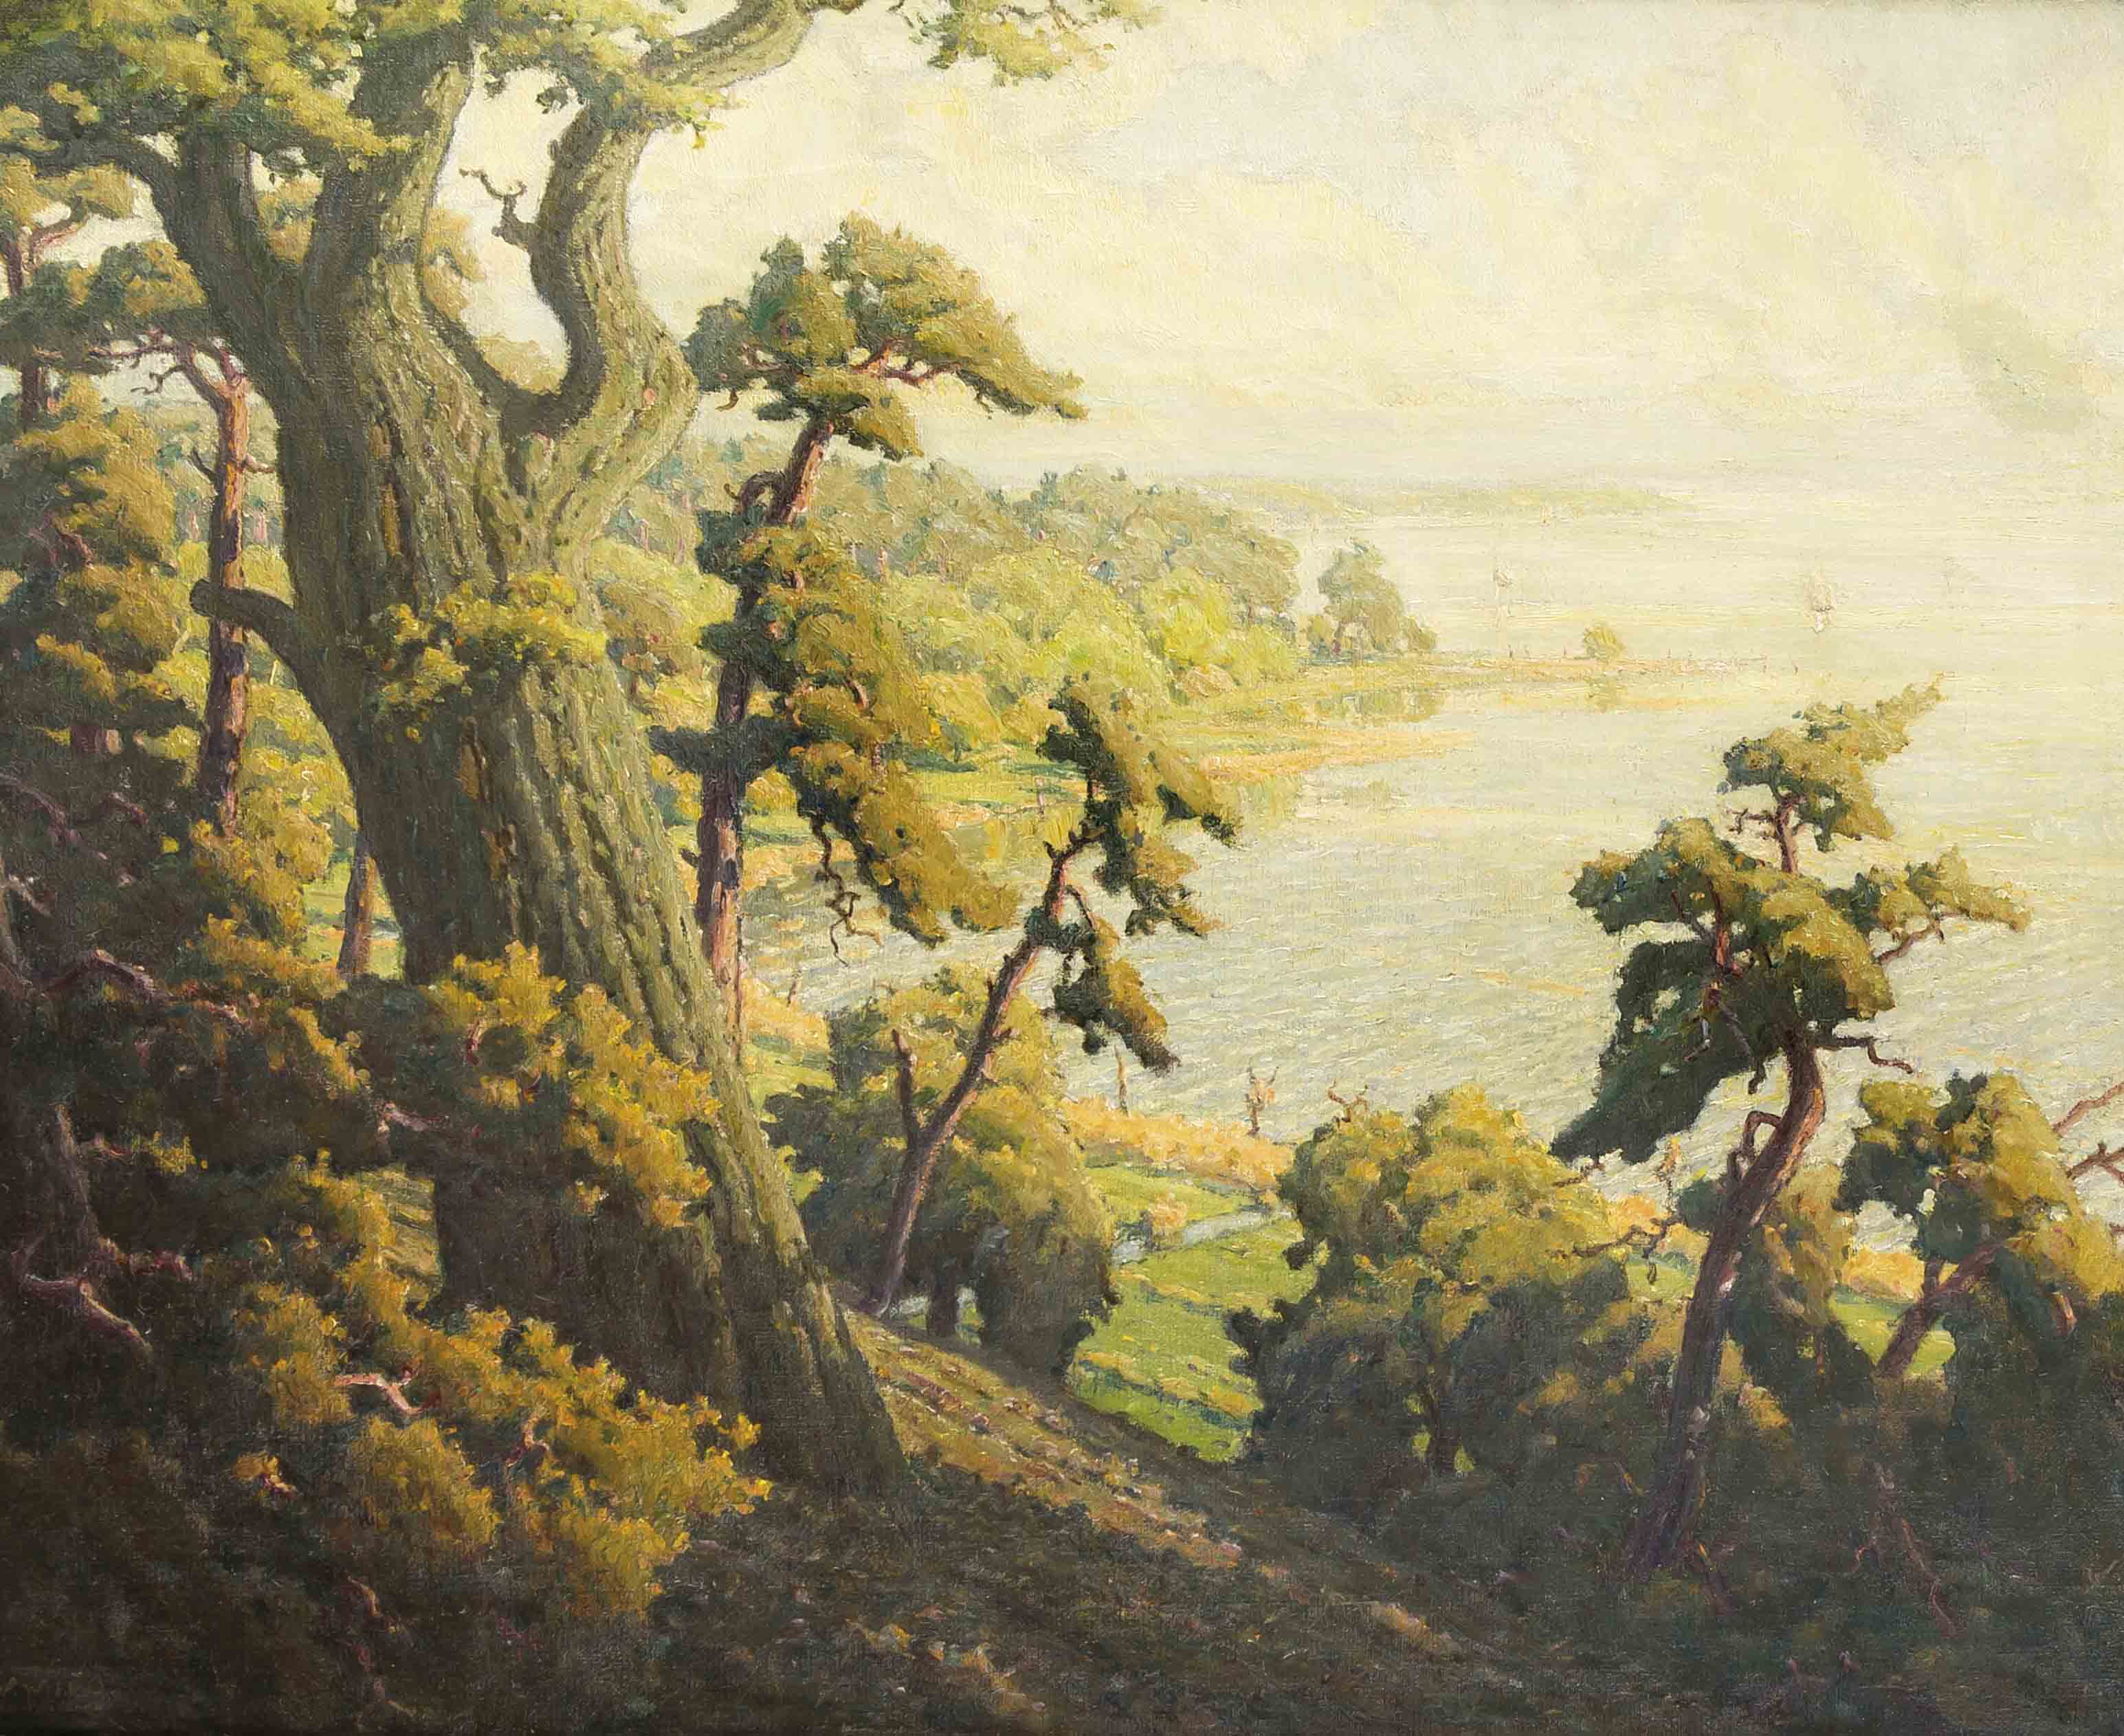 Wilhelm Wilcke (1885-1979), Landschaftsmaler aus Templin, studierte in Breslau,sommerlicher Blick